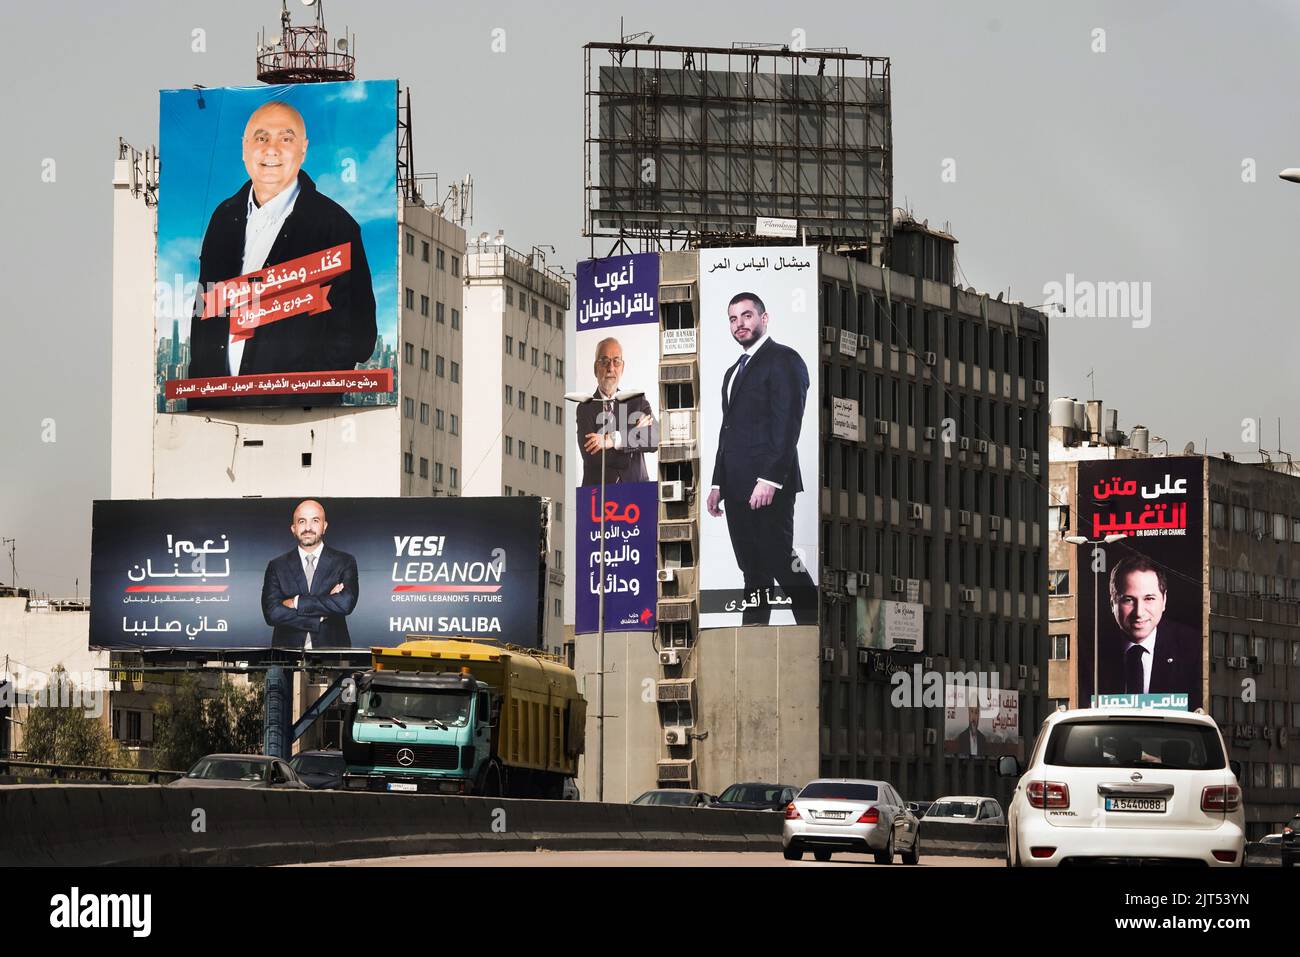 Beirut, Libano: Manifesti con i candidati per le elezioni parlamentari del 15 maggio 2022 sulle case della città Foto Stock